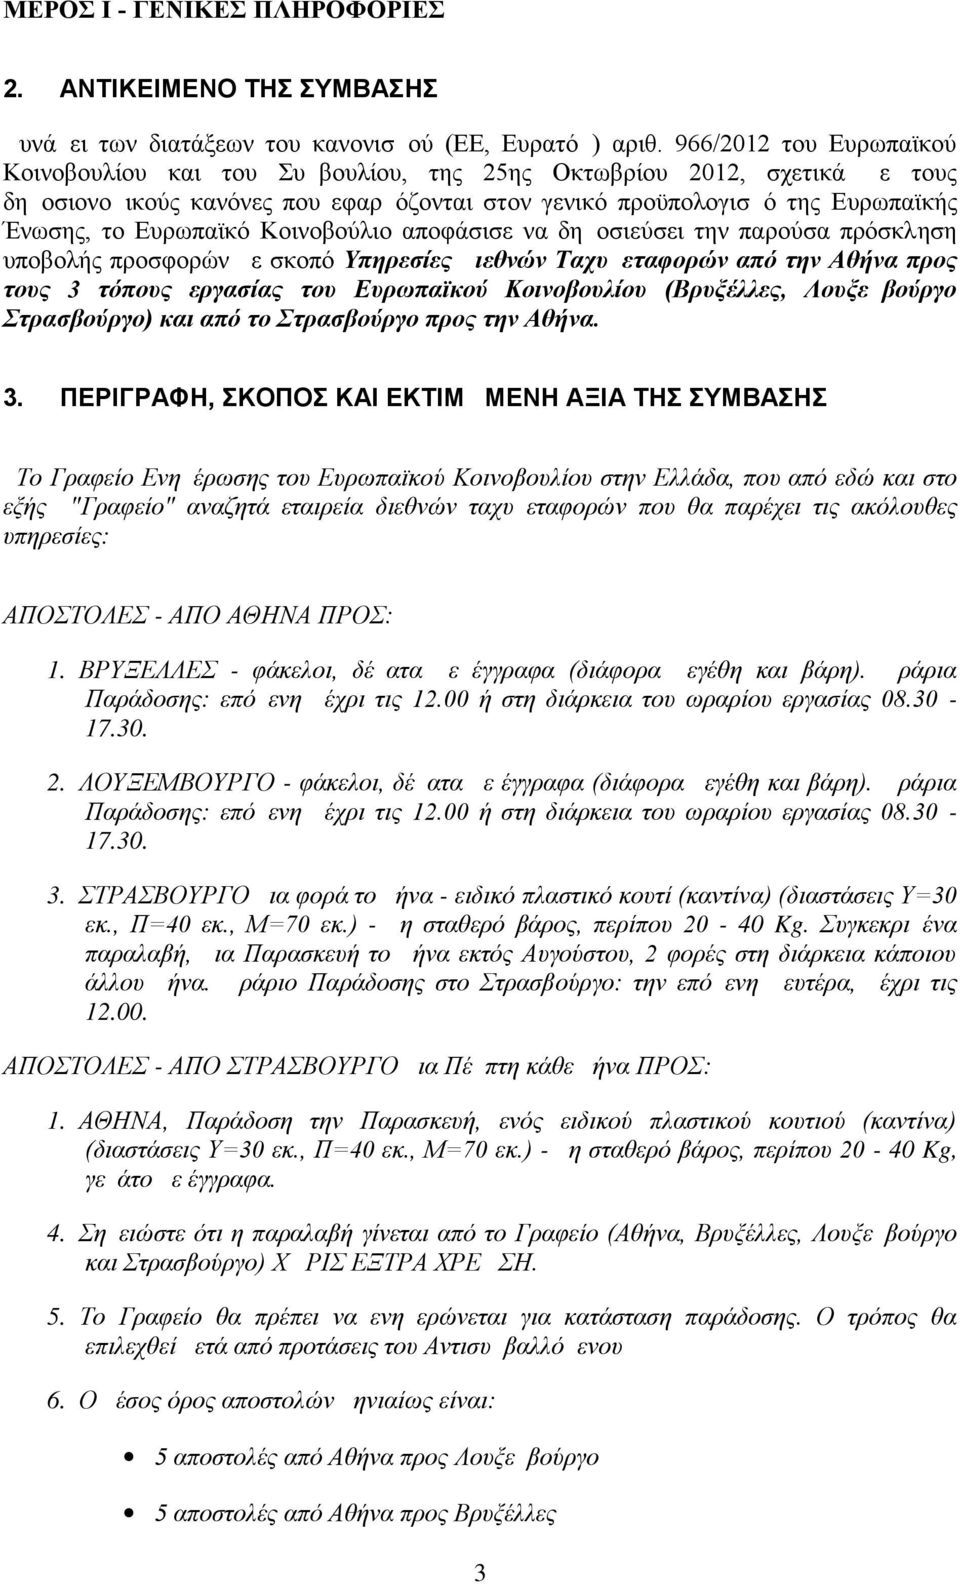 Ευρωπαϊκό Κοινοβούλιο αποφάσισε να δημοσιεύσει την παρούσα πρόσκληση υποβολής προσφορών με σκοπό Υπηρεσίες Διεθνών Ταχυμεταφορών από την Αθήνα προς τους 3 τόπους εργασίας του Ευρωπαϊκού Κοινοβουλίου